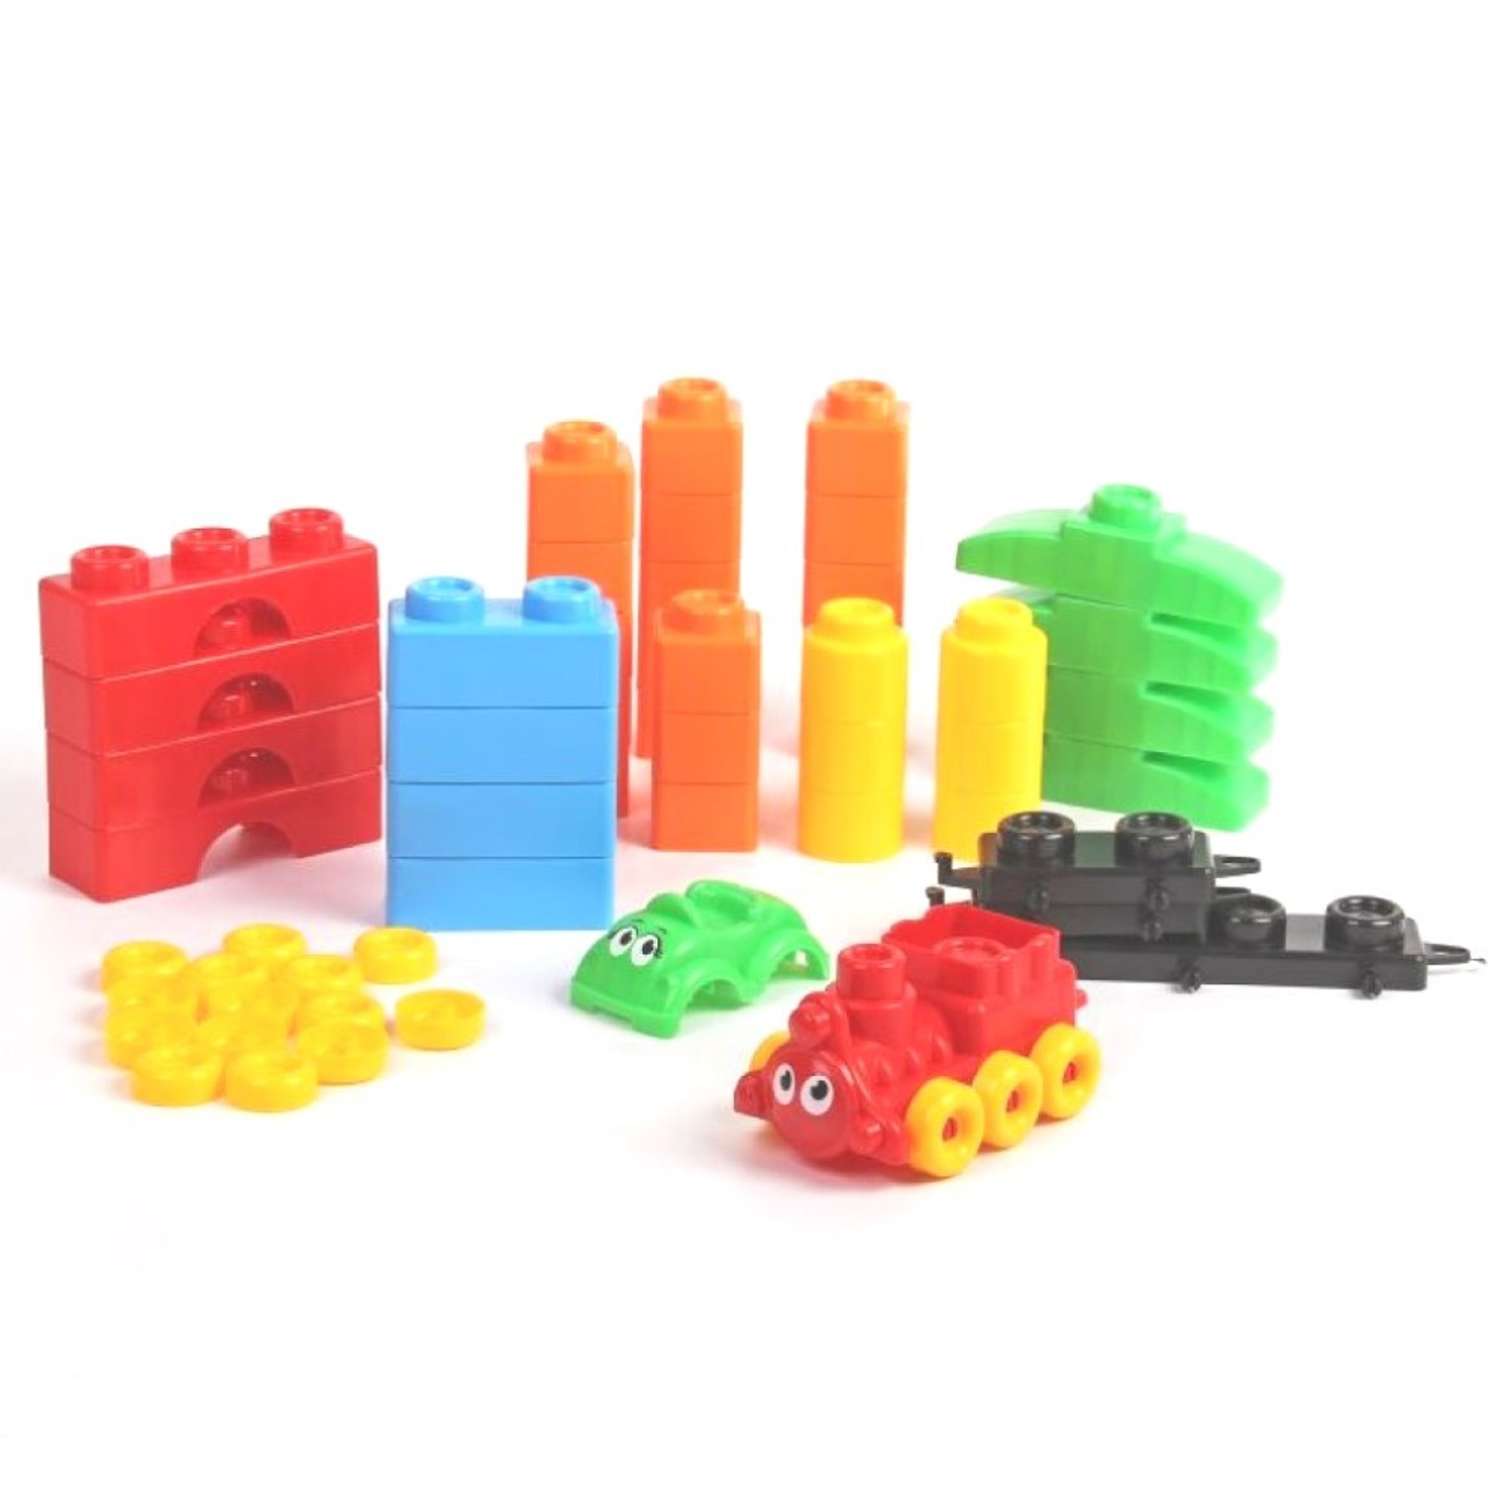 Развивающие игрушки БИПЛАНТ для малышей Конструктор Кноп-Кнопыч 114 деталей + Сортер Кубик логический малый - фото 5